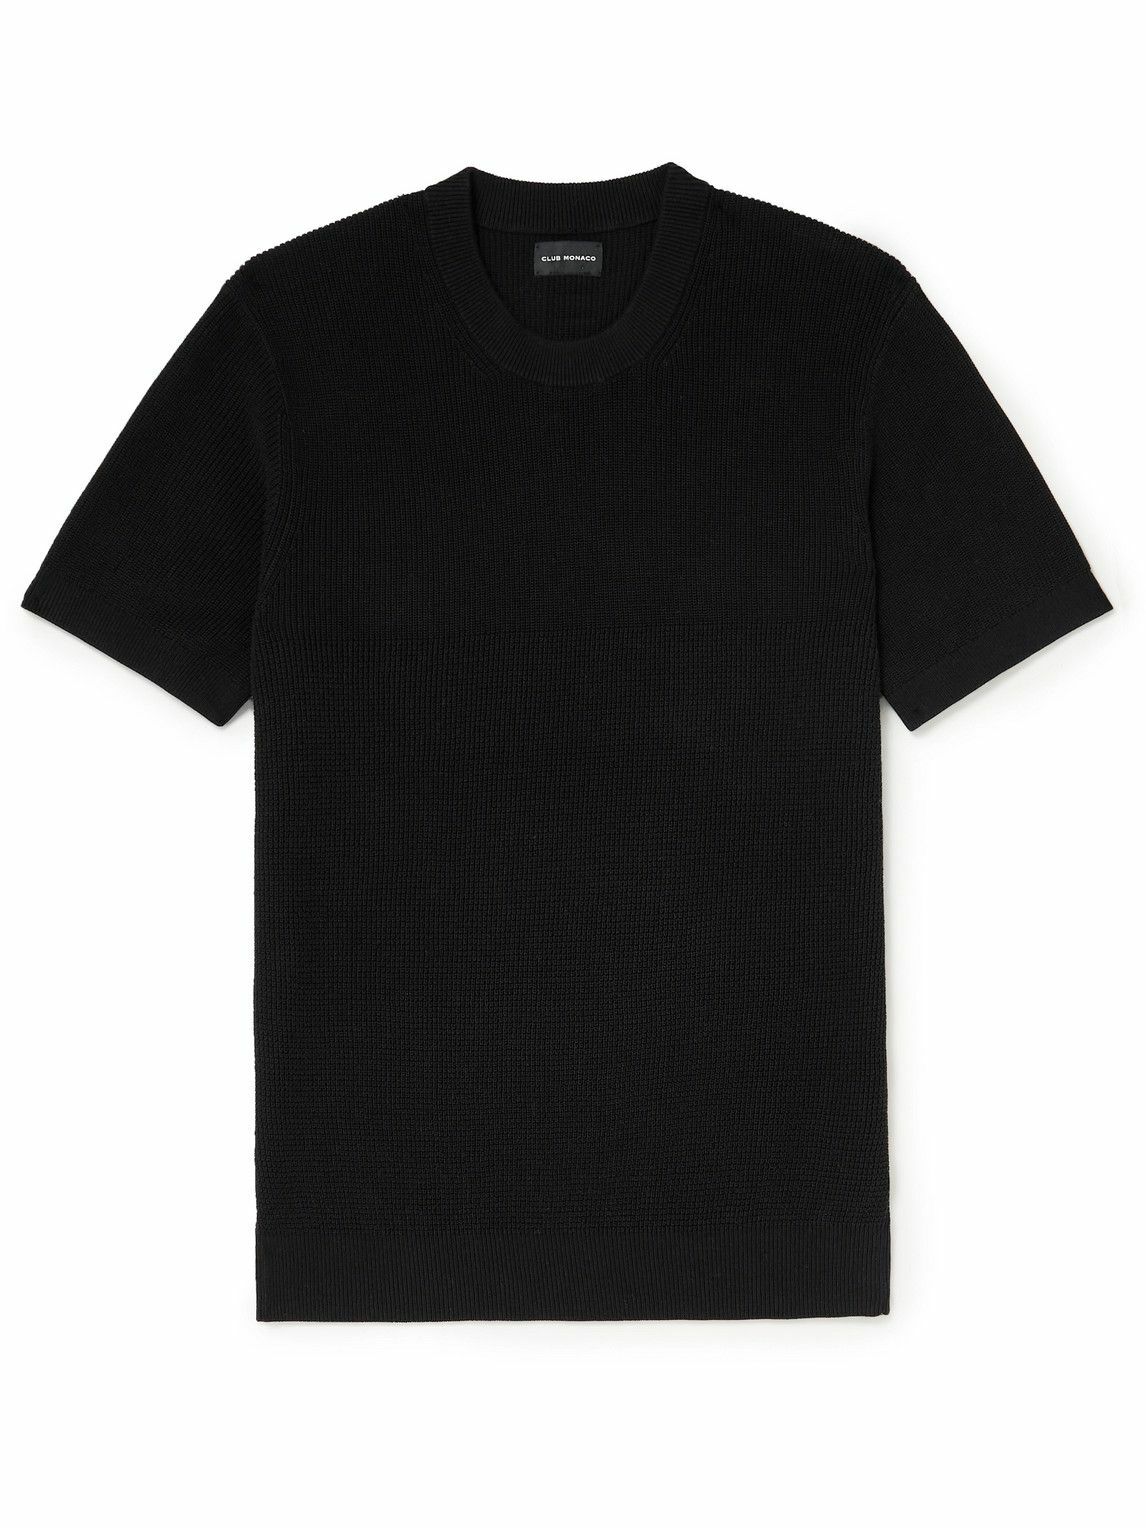 Photo: Club Monaco - Ribbed Cotton T-Shirt - Black